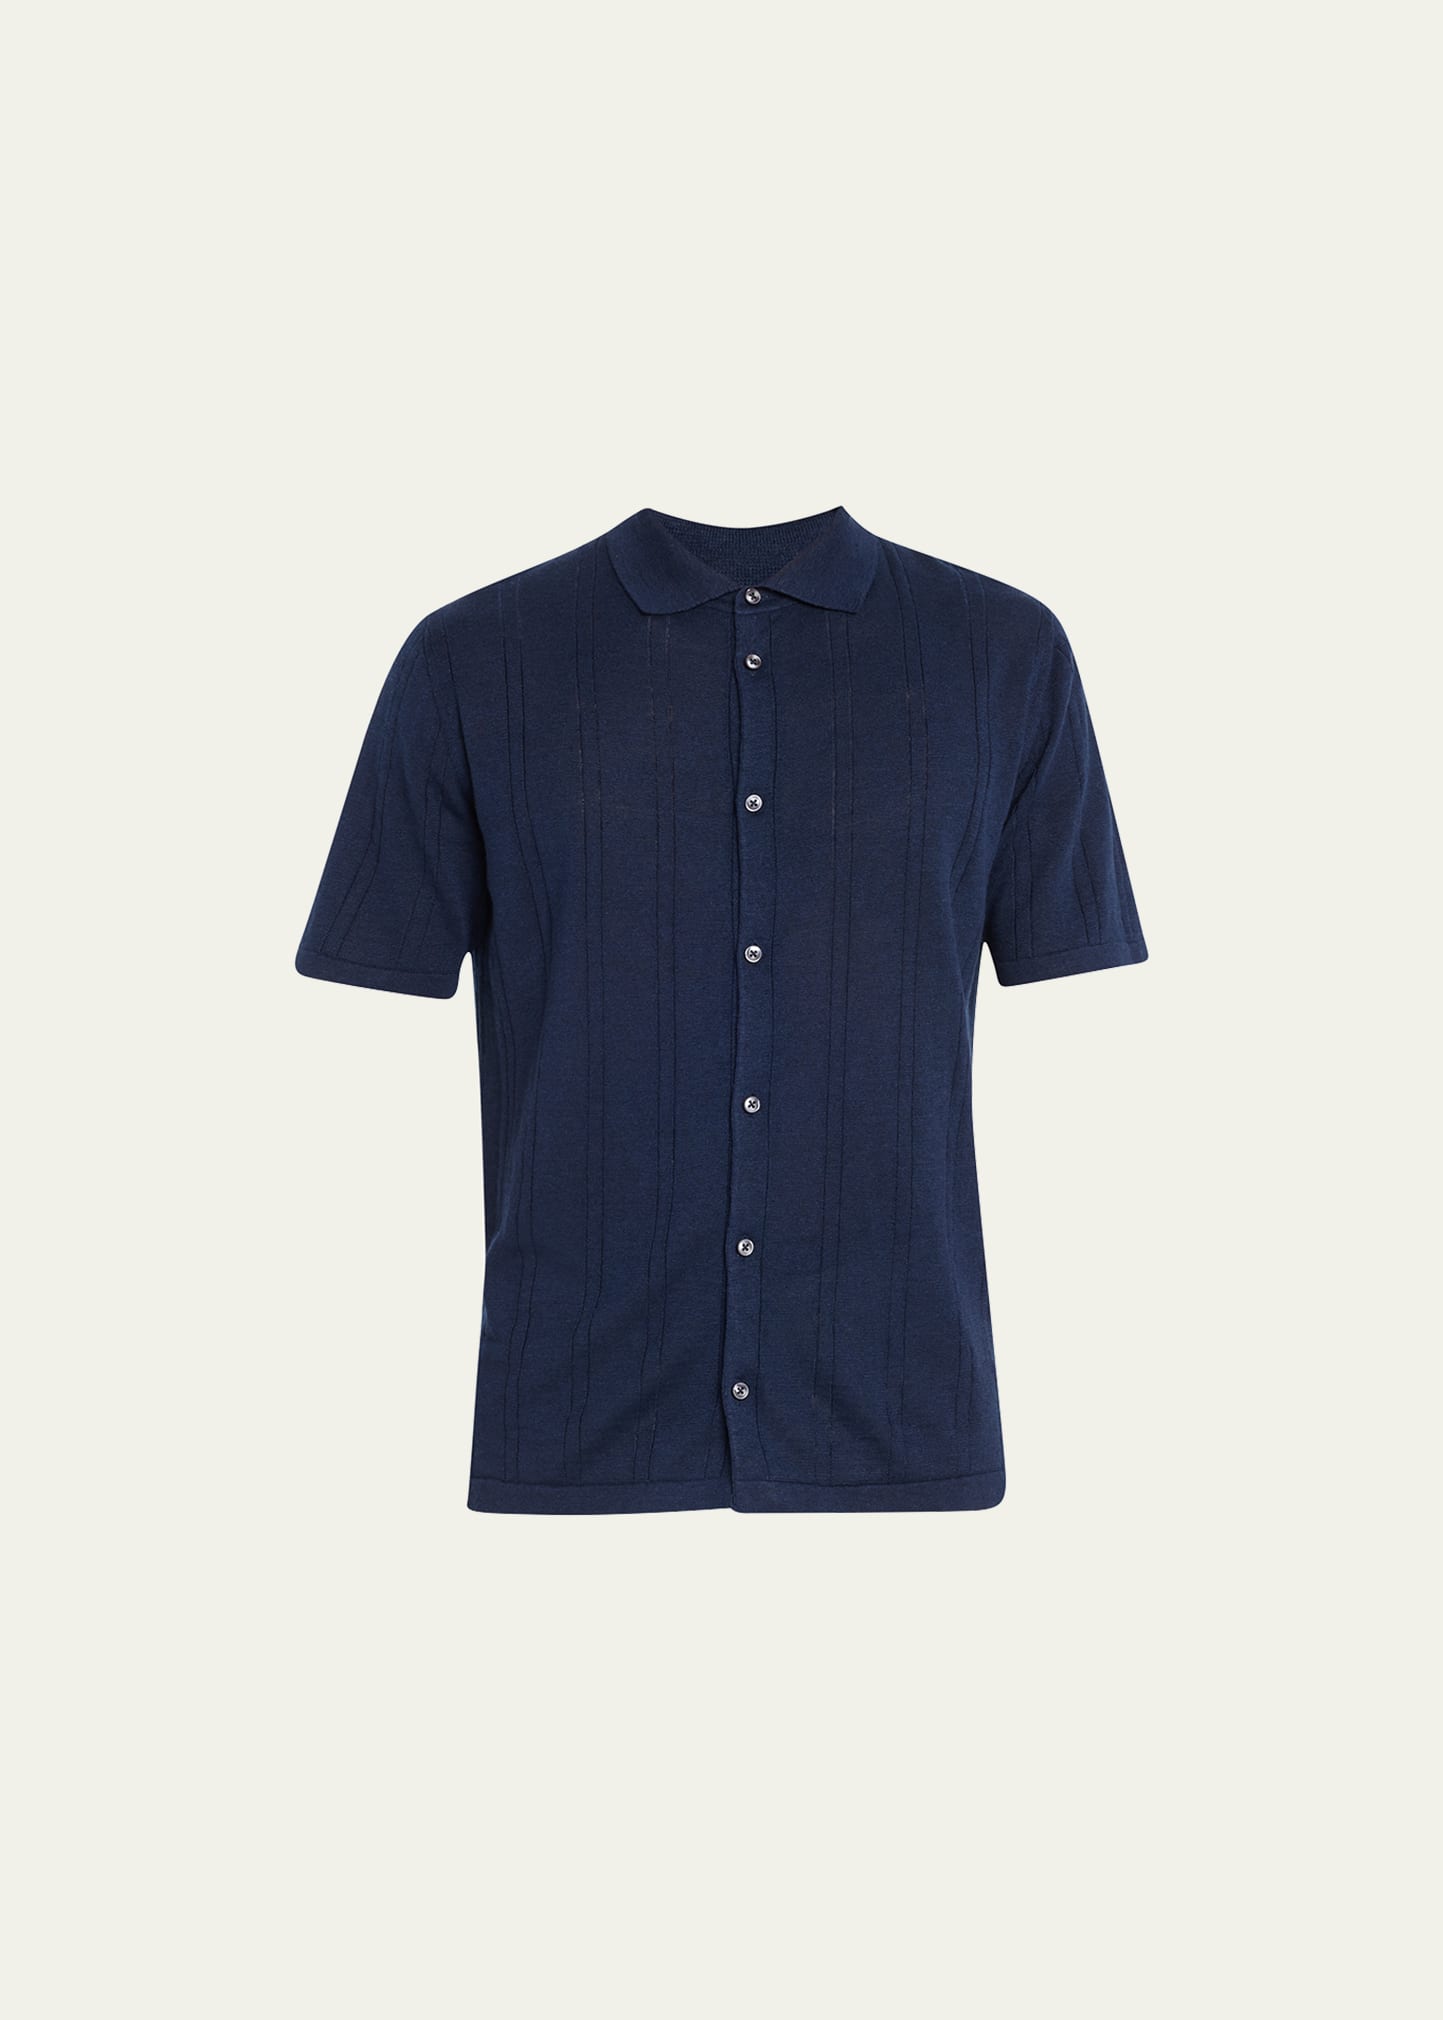 Men's Knit Short-Sleeve Shirt